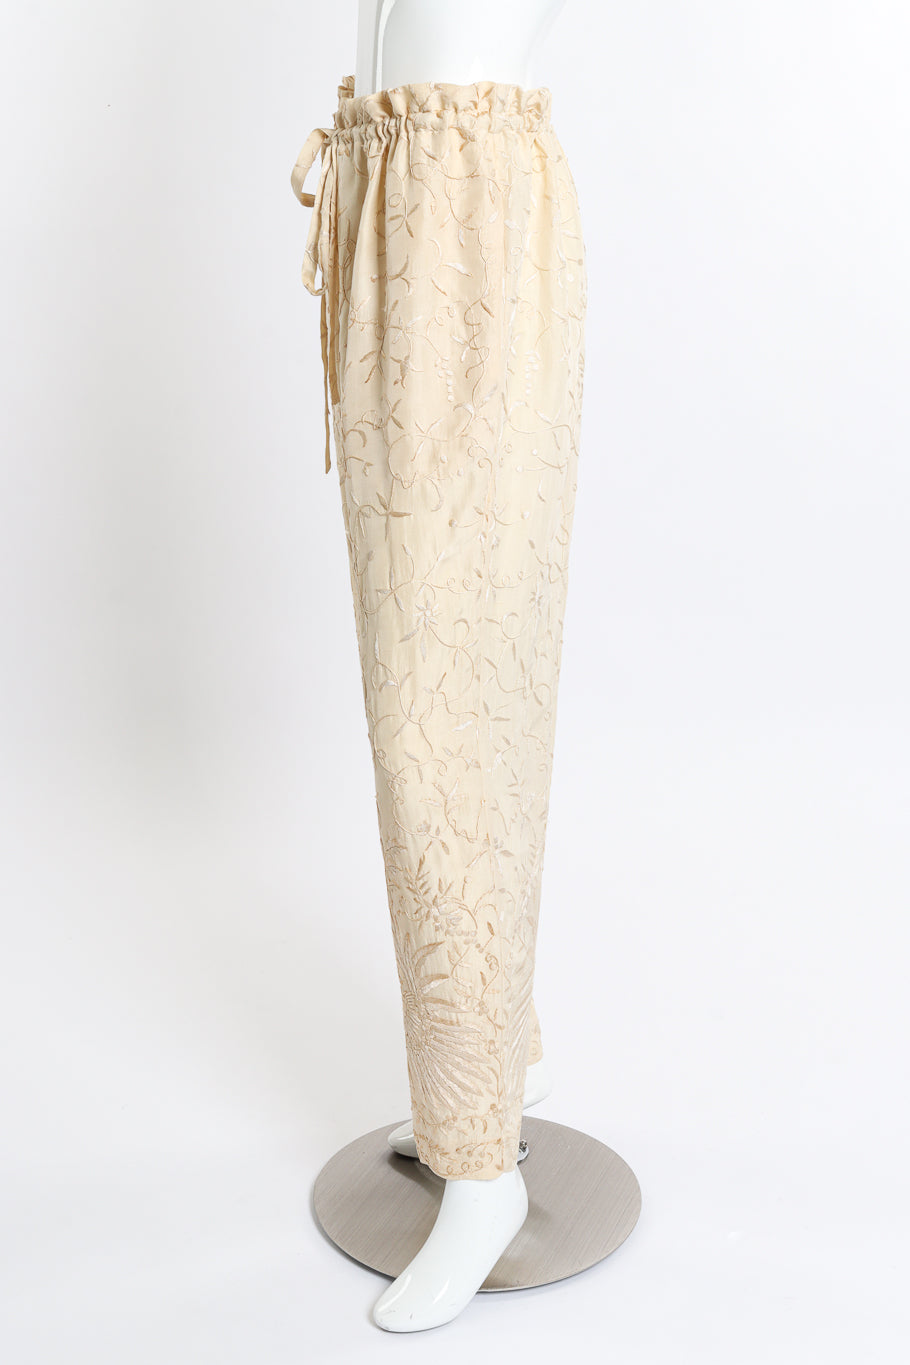 Vintage Donna Karan Embroidered Top & Pant Set pant side on mannequin @recess la